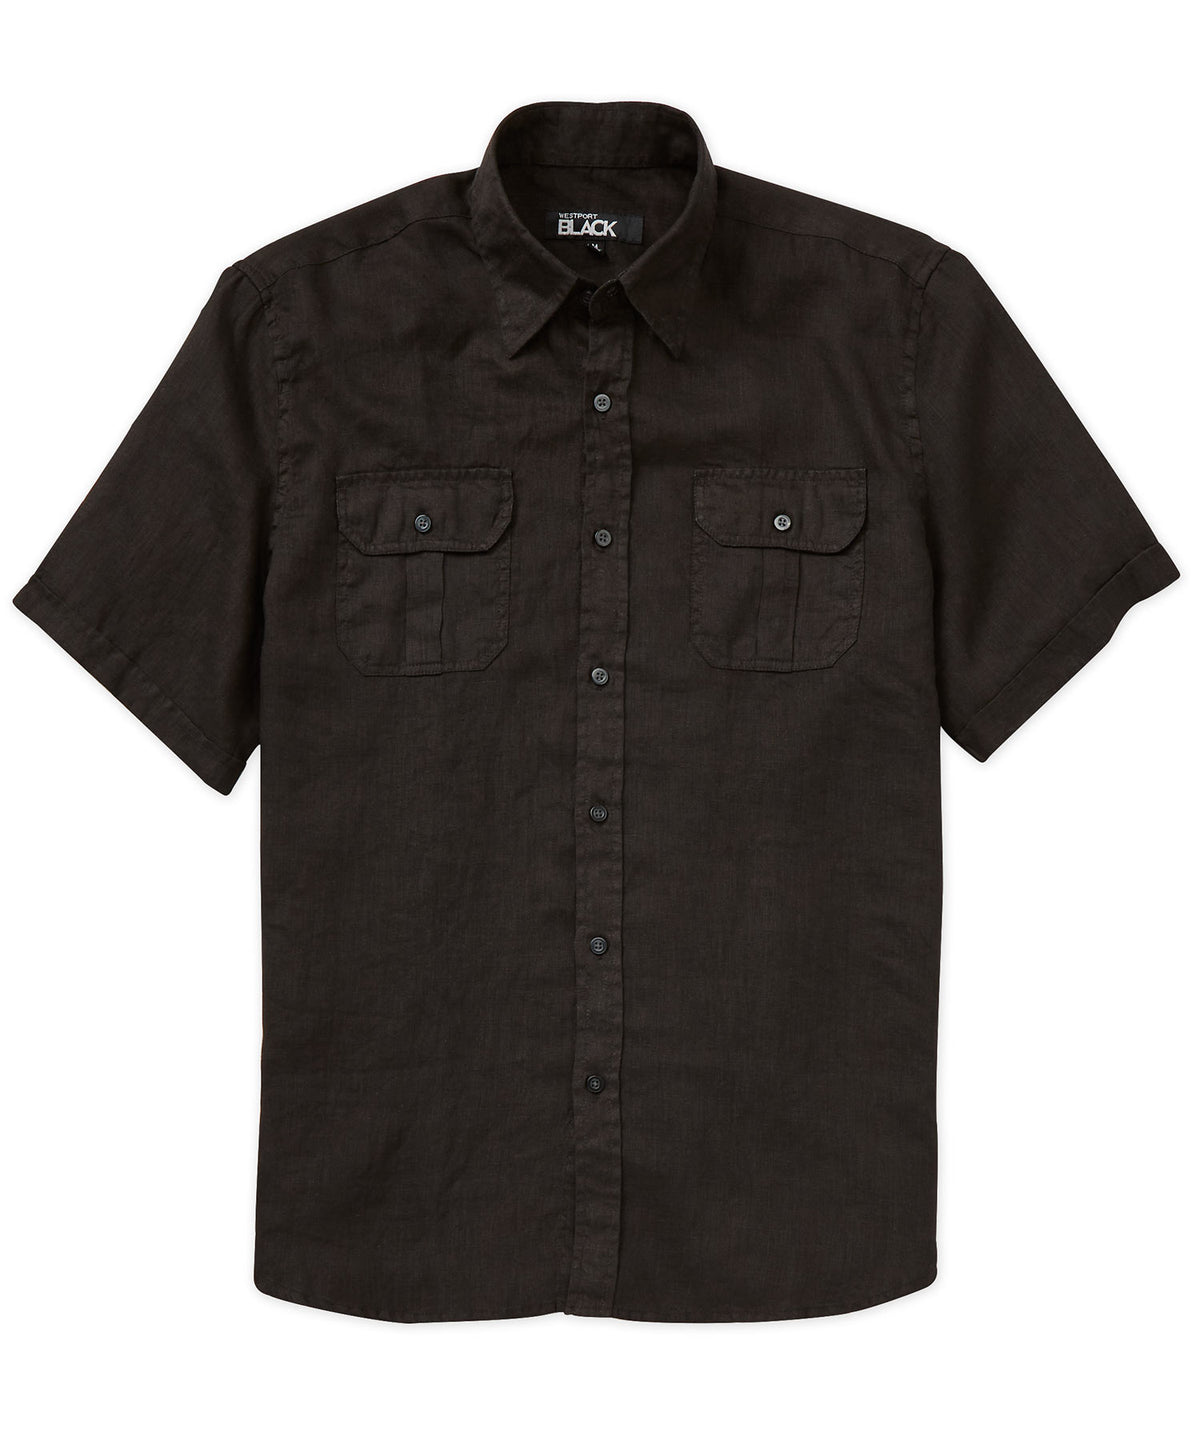 Westport Black Short Sleeve Linen Button-Under Collar Safari Shirt, Big & Tall